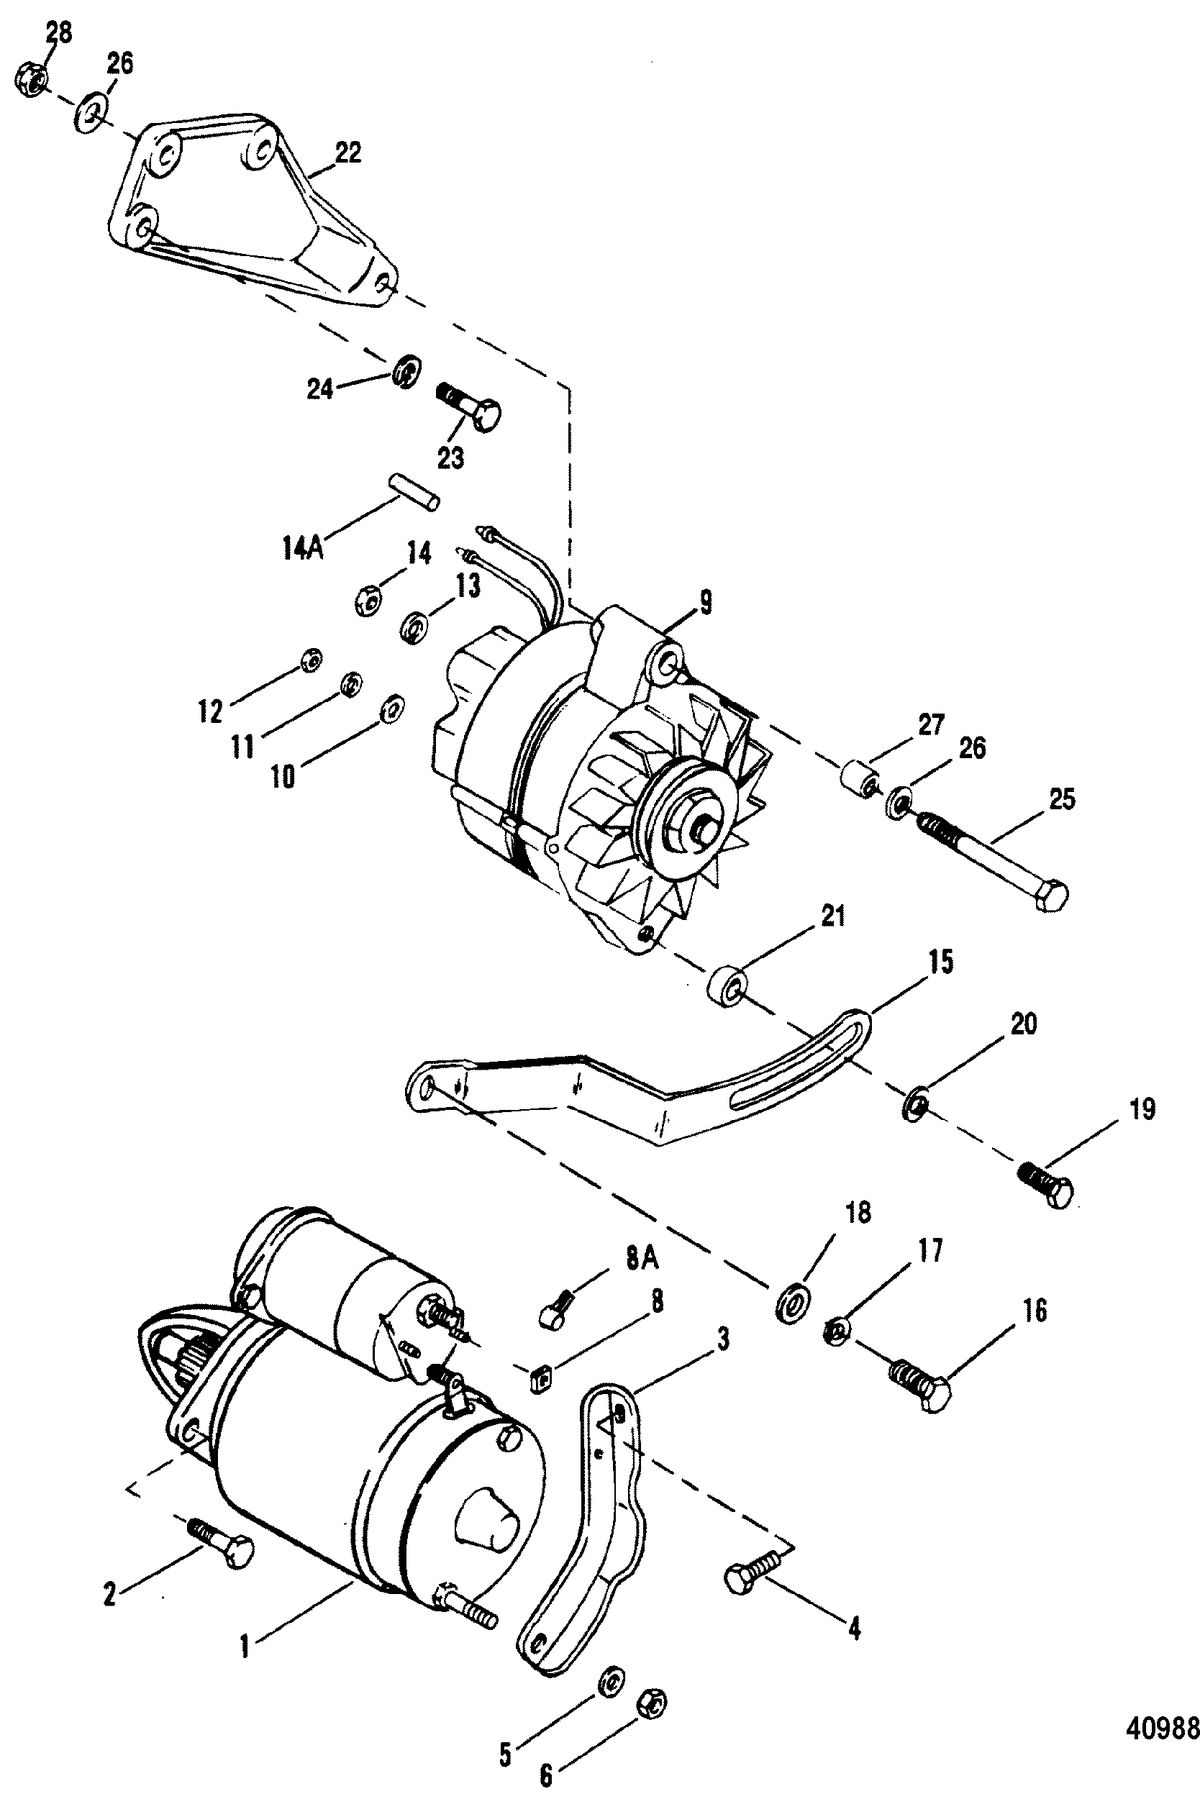 MERCRUISER 5.7L COMPETITION SKI ENGINE Starter Motor & Alternator